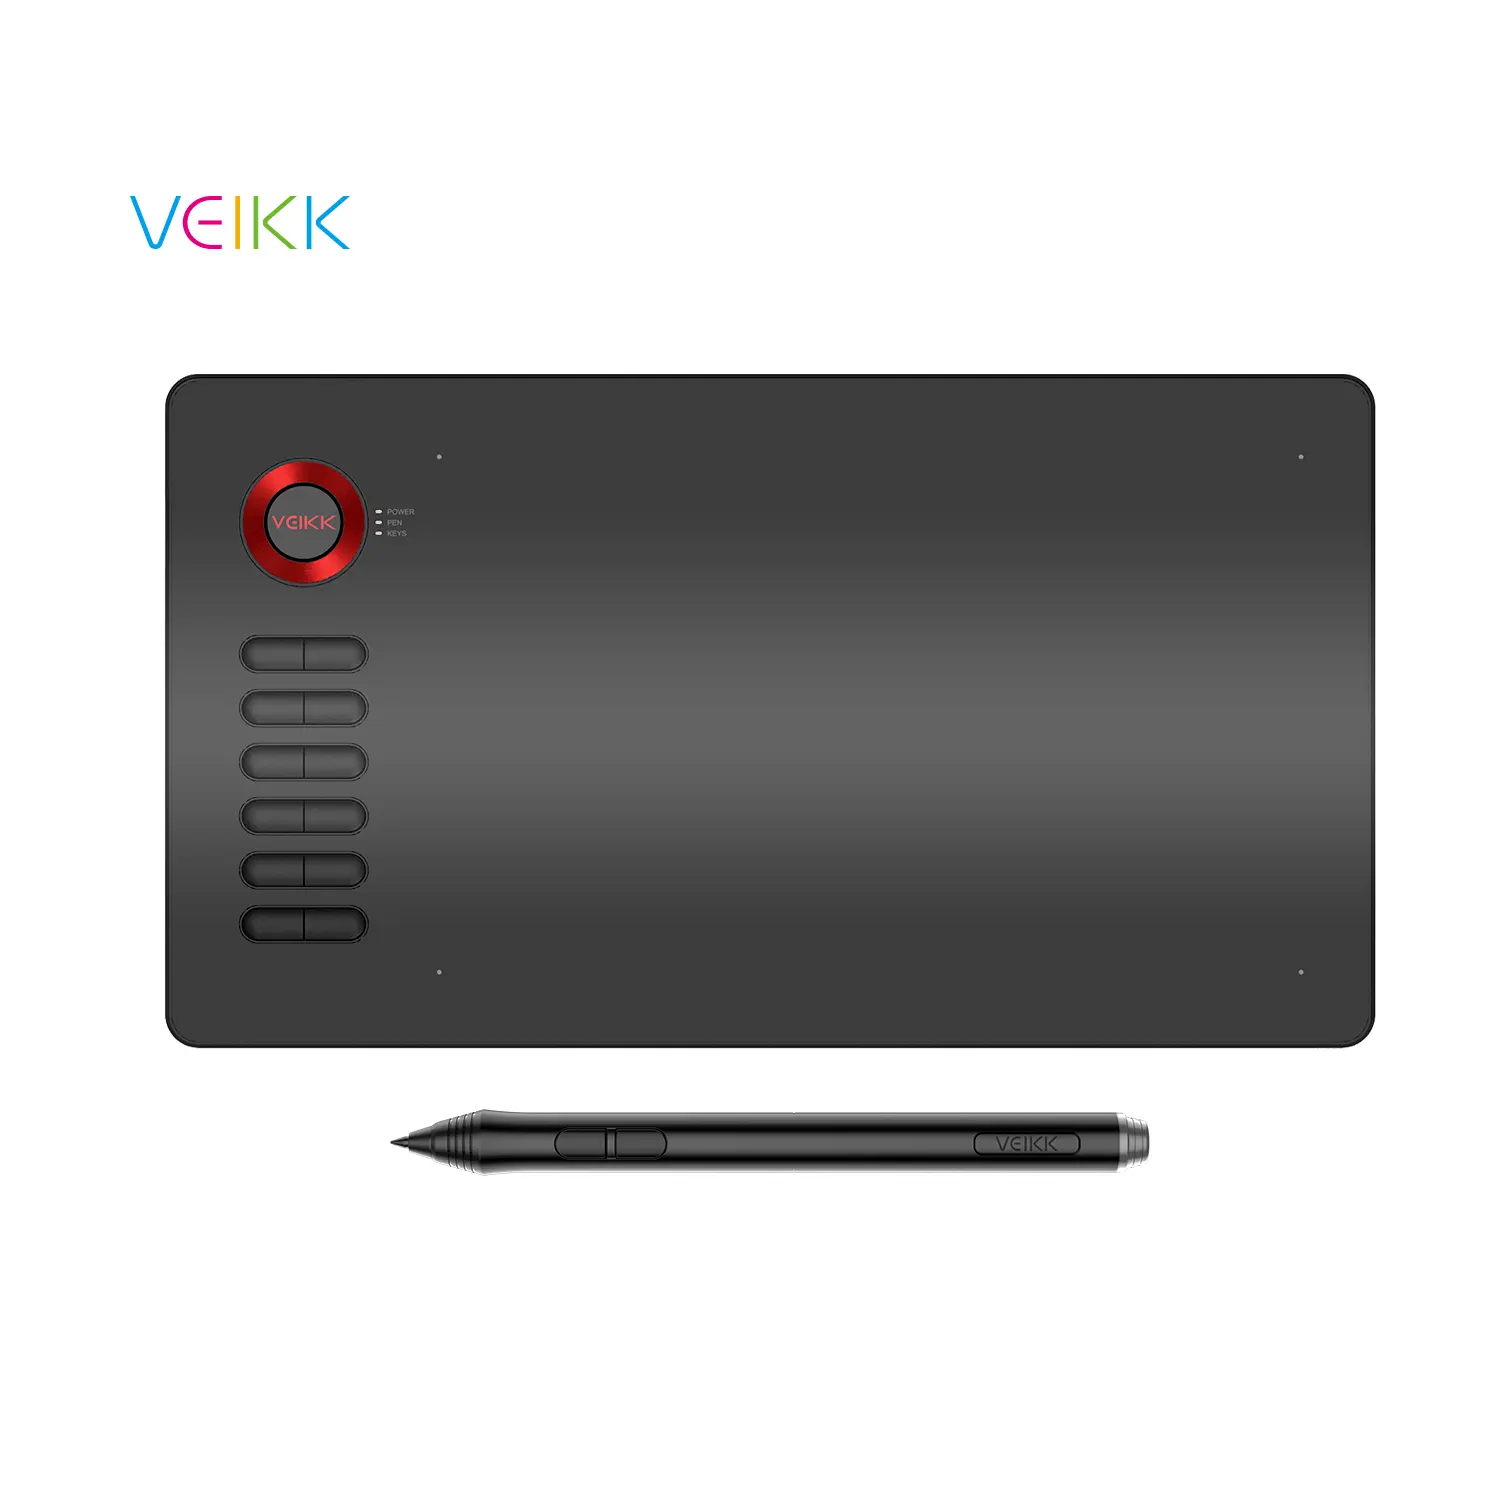 VEIKK新しいA15グラフィック描画タブレット (マイクロUSBコネクタ付き) 他のコンピューターアクセサリー (12キーと8192レベルのペン付き)